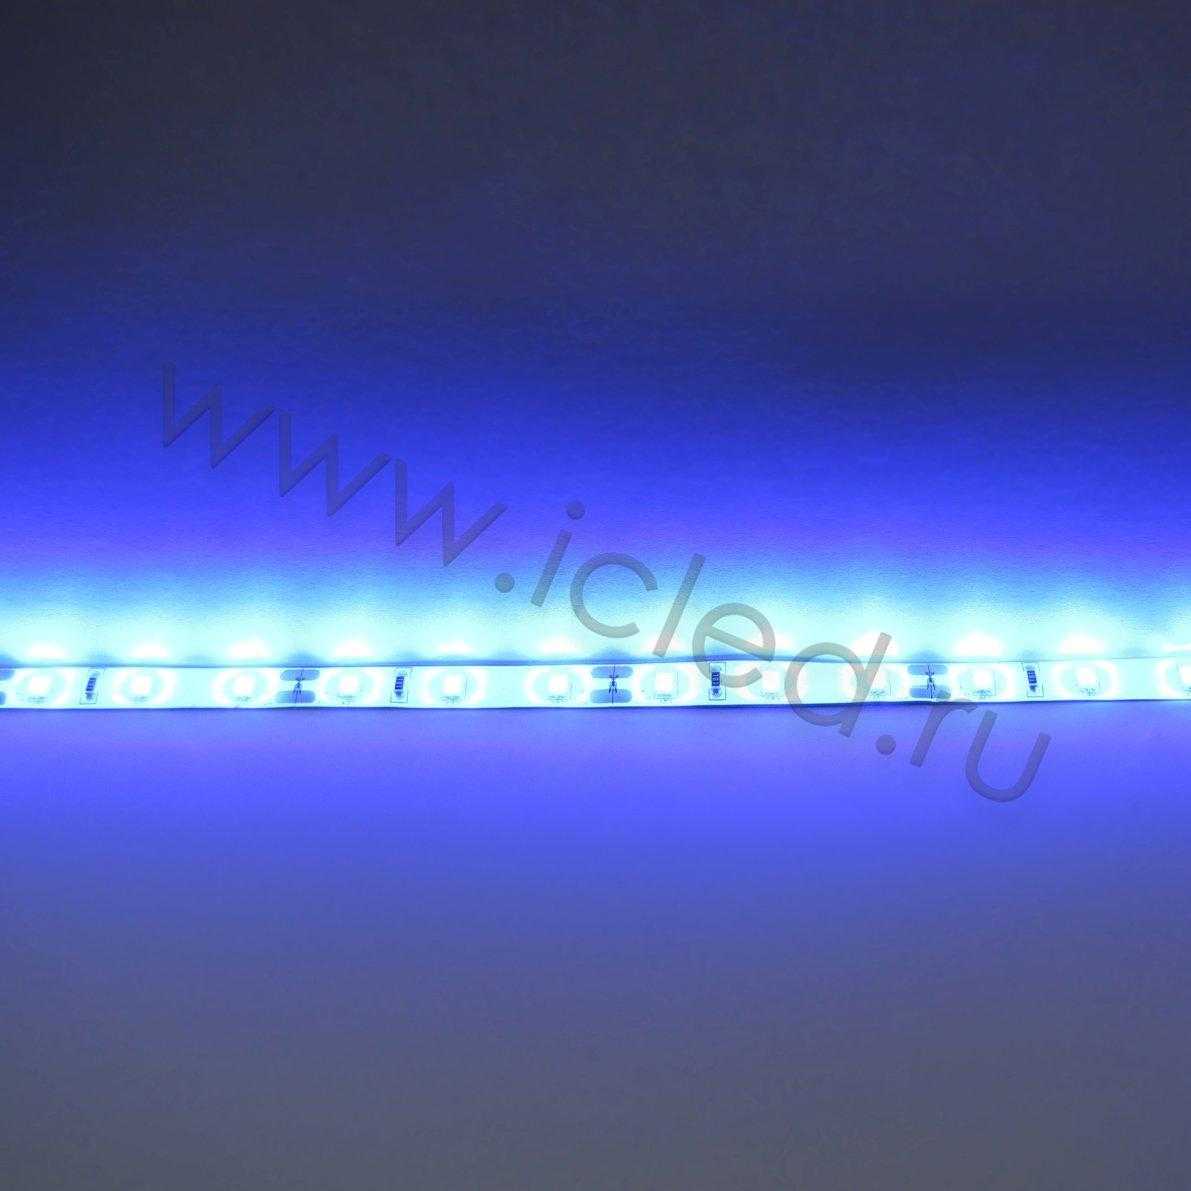 Влагозащищенные светодиодные ленты Светодиодная лента LUX class, 2835, 60led/m, Blue, 12V, IP65 Icled